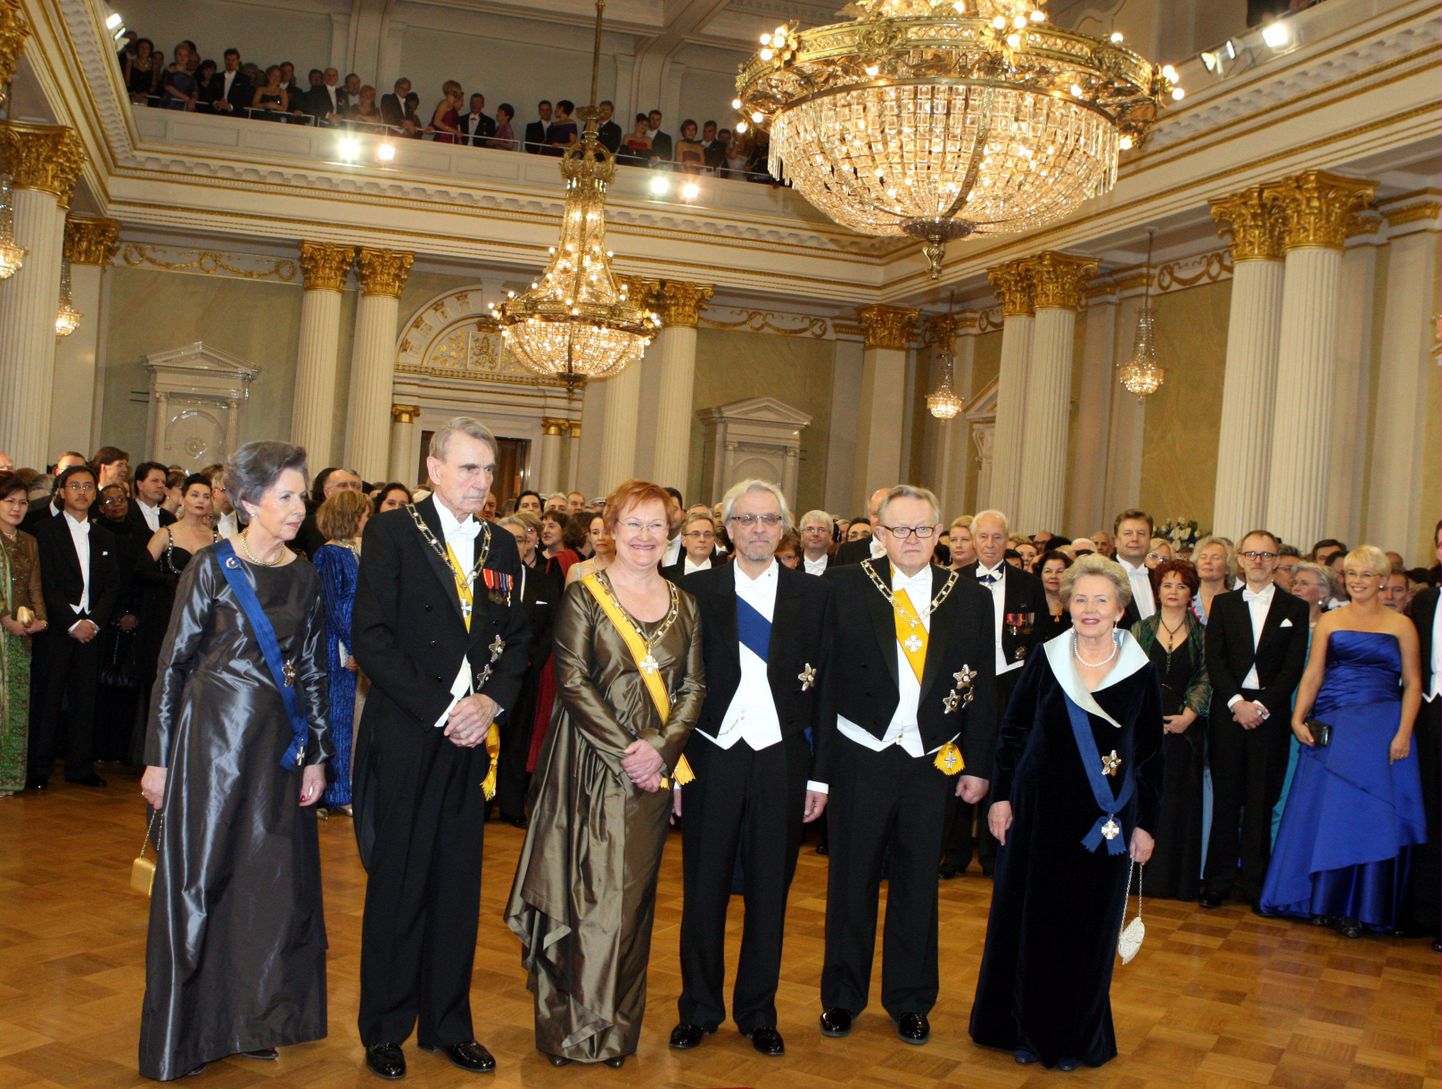 Soome praegune ja endised riigipead. Vasakult Tellervo ja Mauno Koivisto, Tarja Halonen koos abikaasa Pentti Arajärviga, Martti ja Eeva Ahtisaaari.